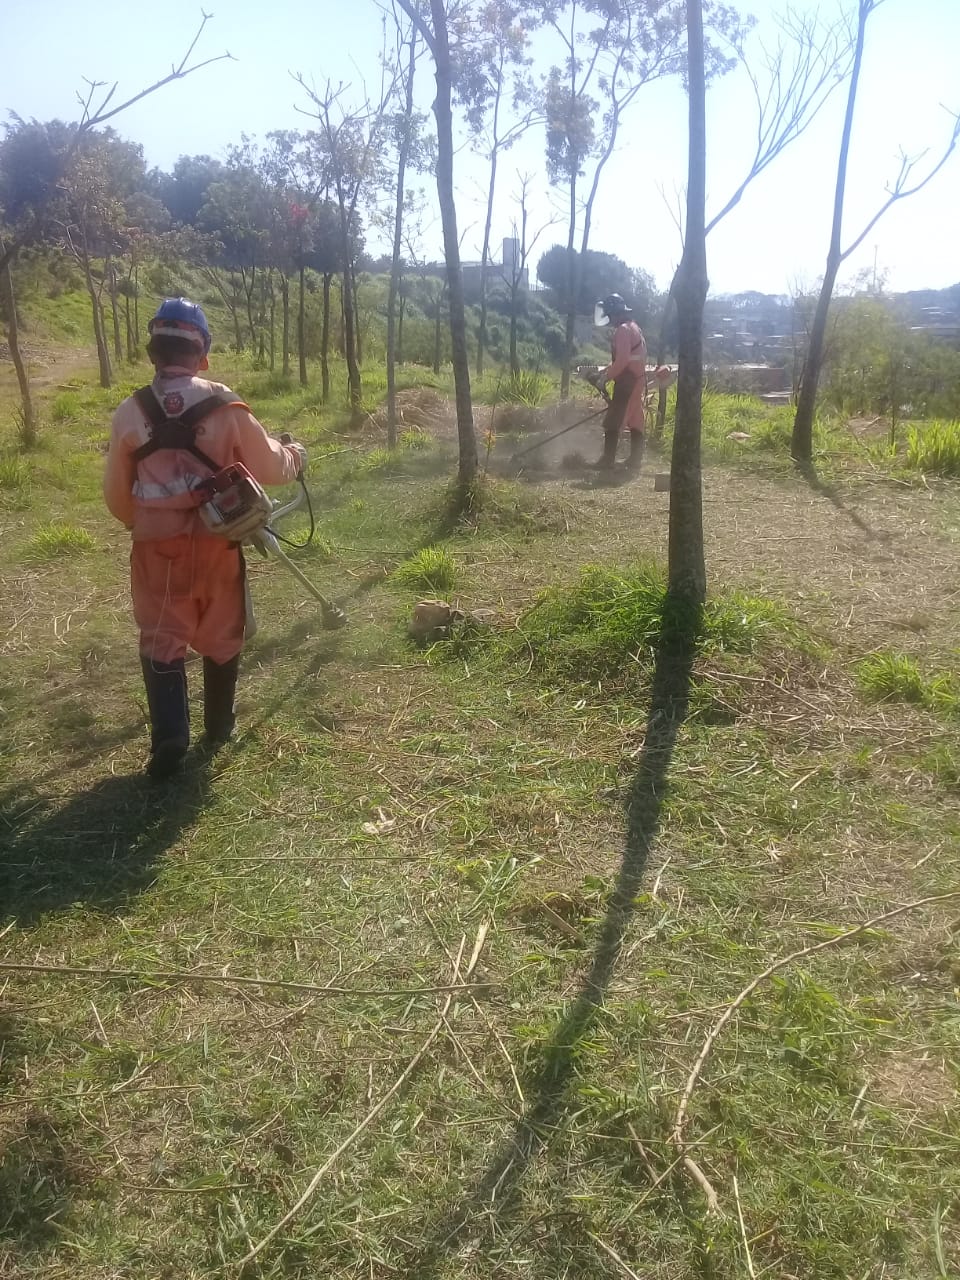 Dois funcionários com uniforme da Prefeitura cortando a grama com roçadeiras.